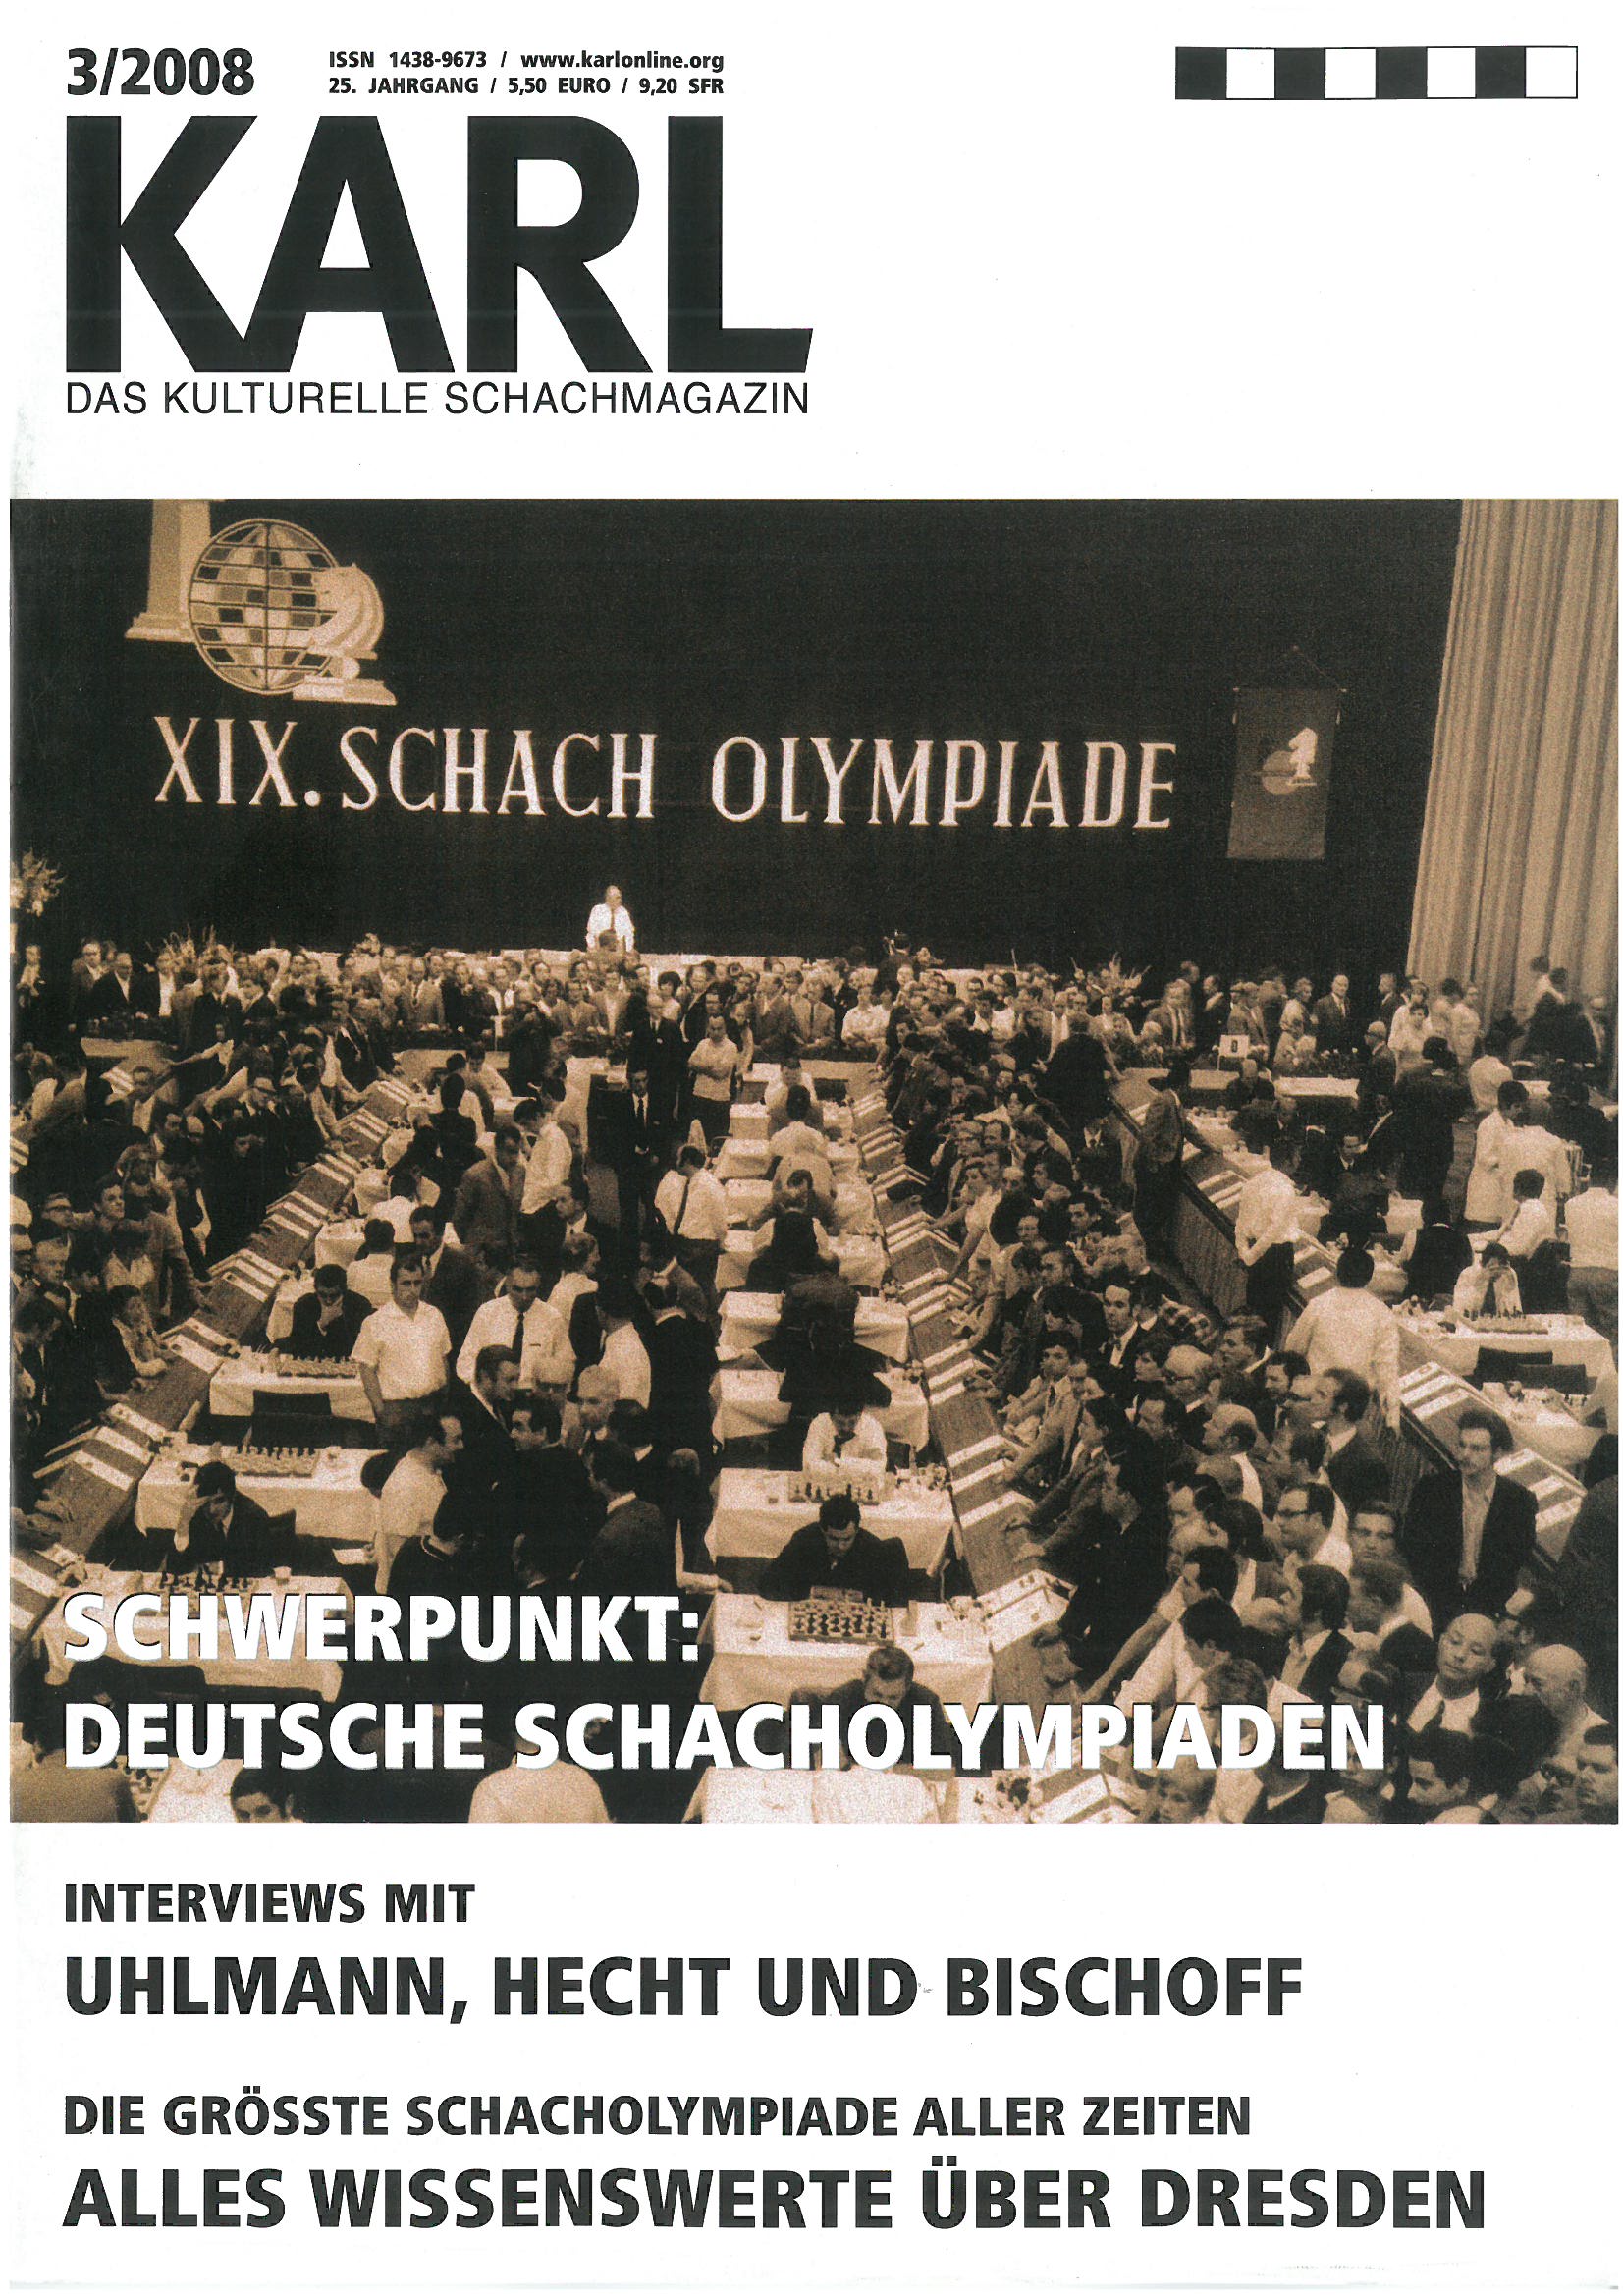 Karl 3/2008 - Schwerpunkt: Deutsche Schacholympiaden